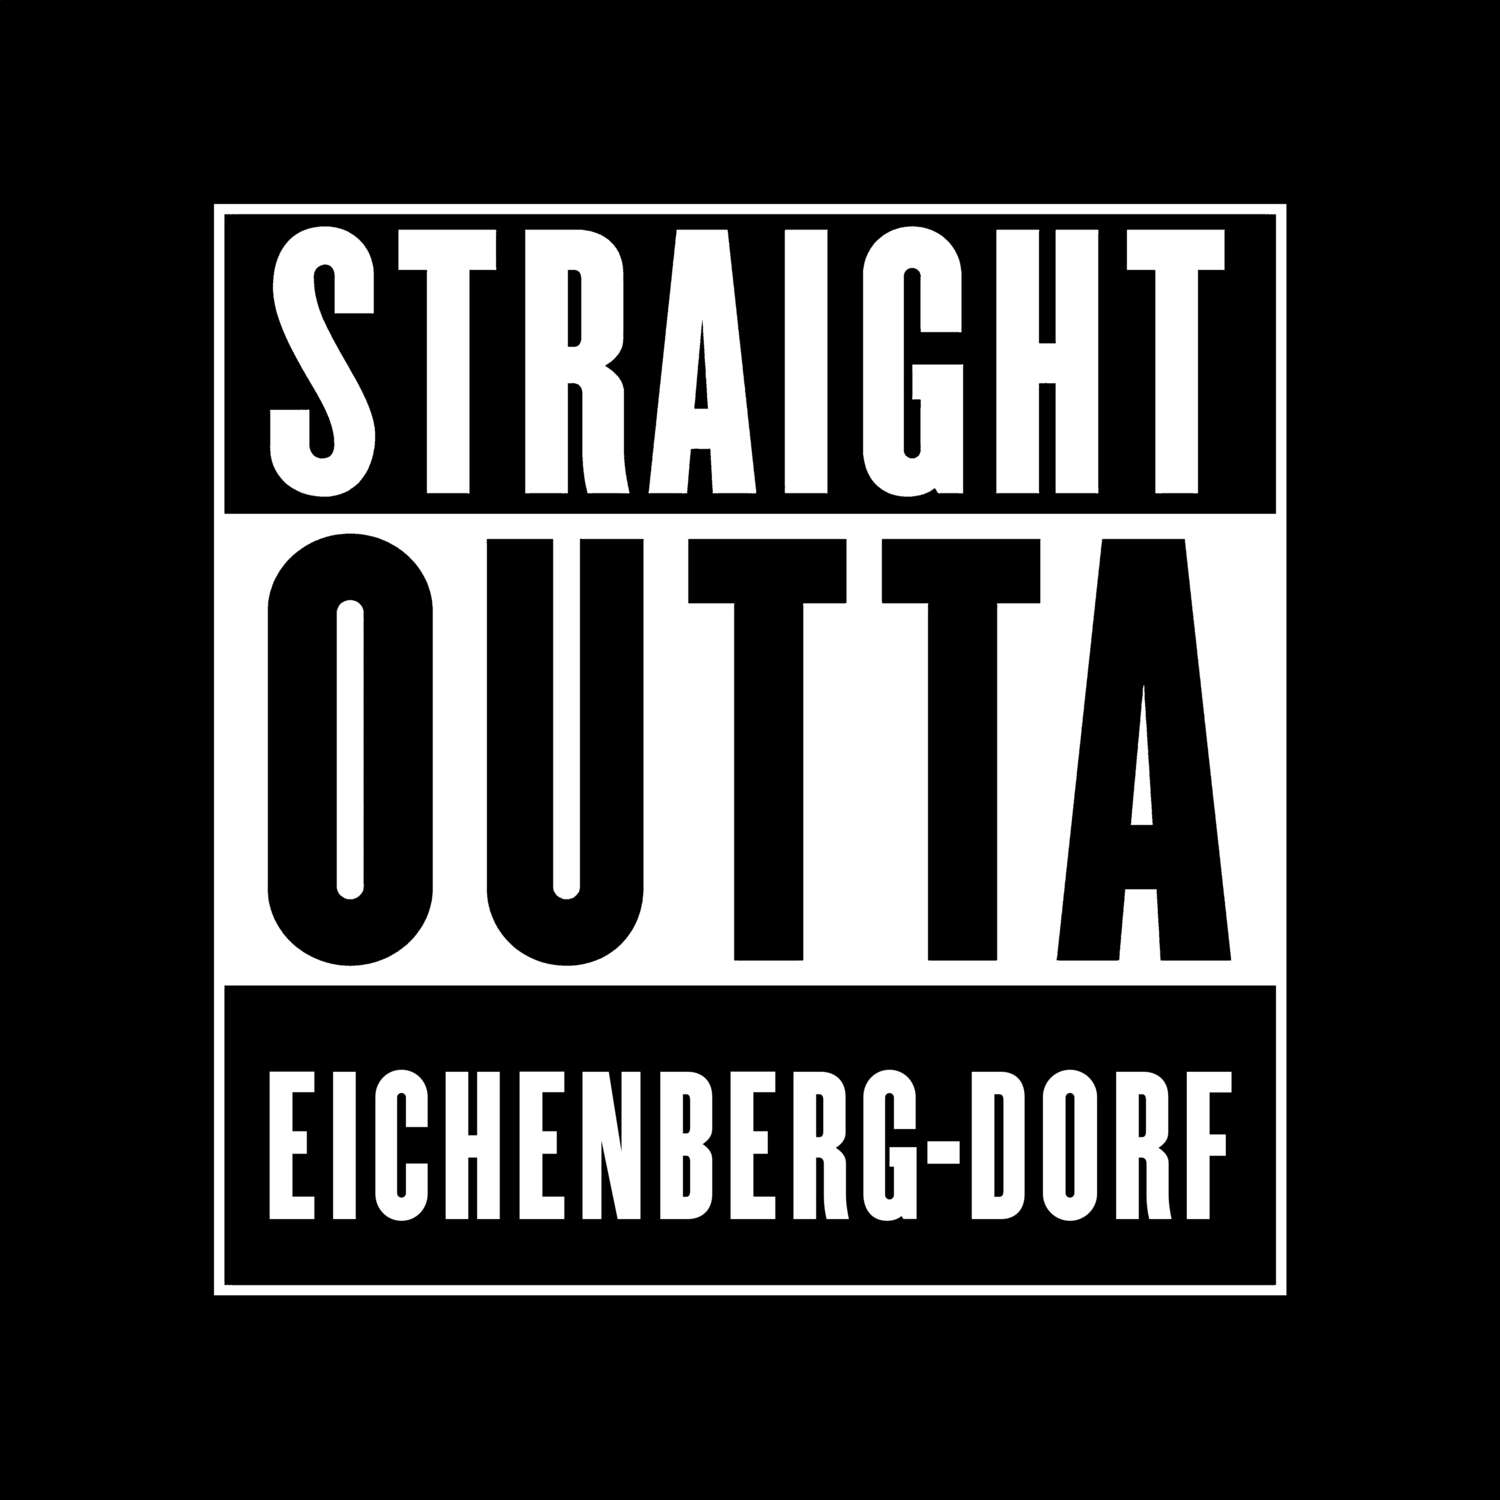 Eichenberg-Dorf T-Shirt »Straight Outta«